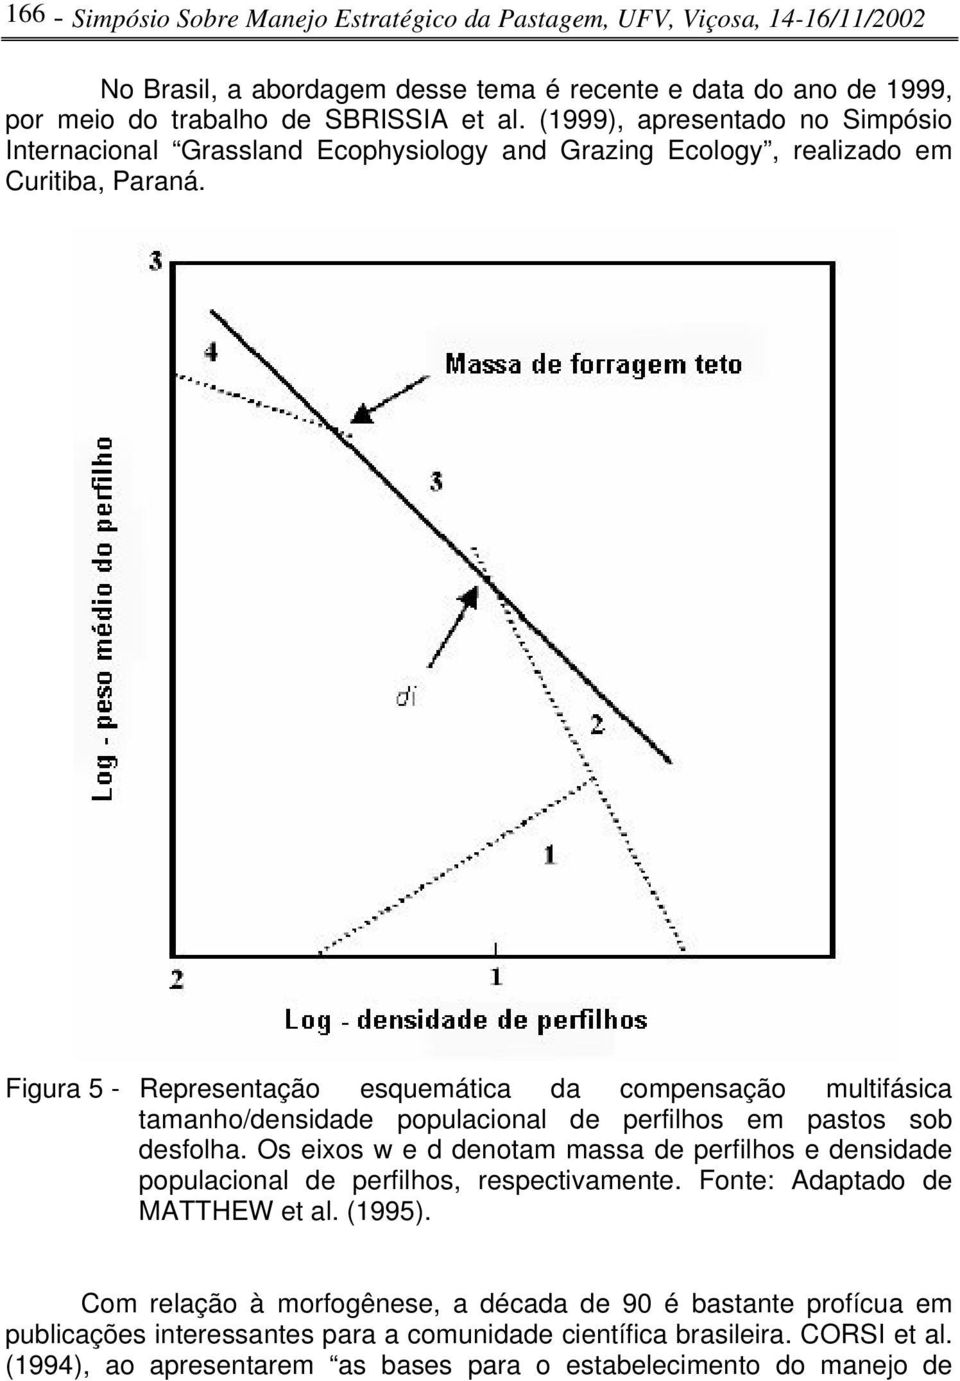 Figura 5 - Representação esquemática da compensação multifásica tamanho/densidade populacional de perfilhos em pastos sob desfolha.